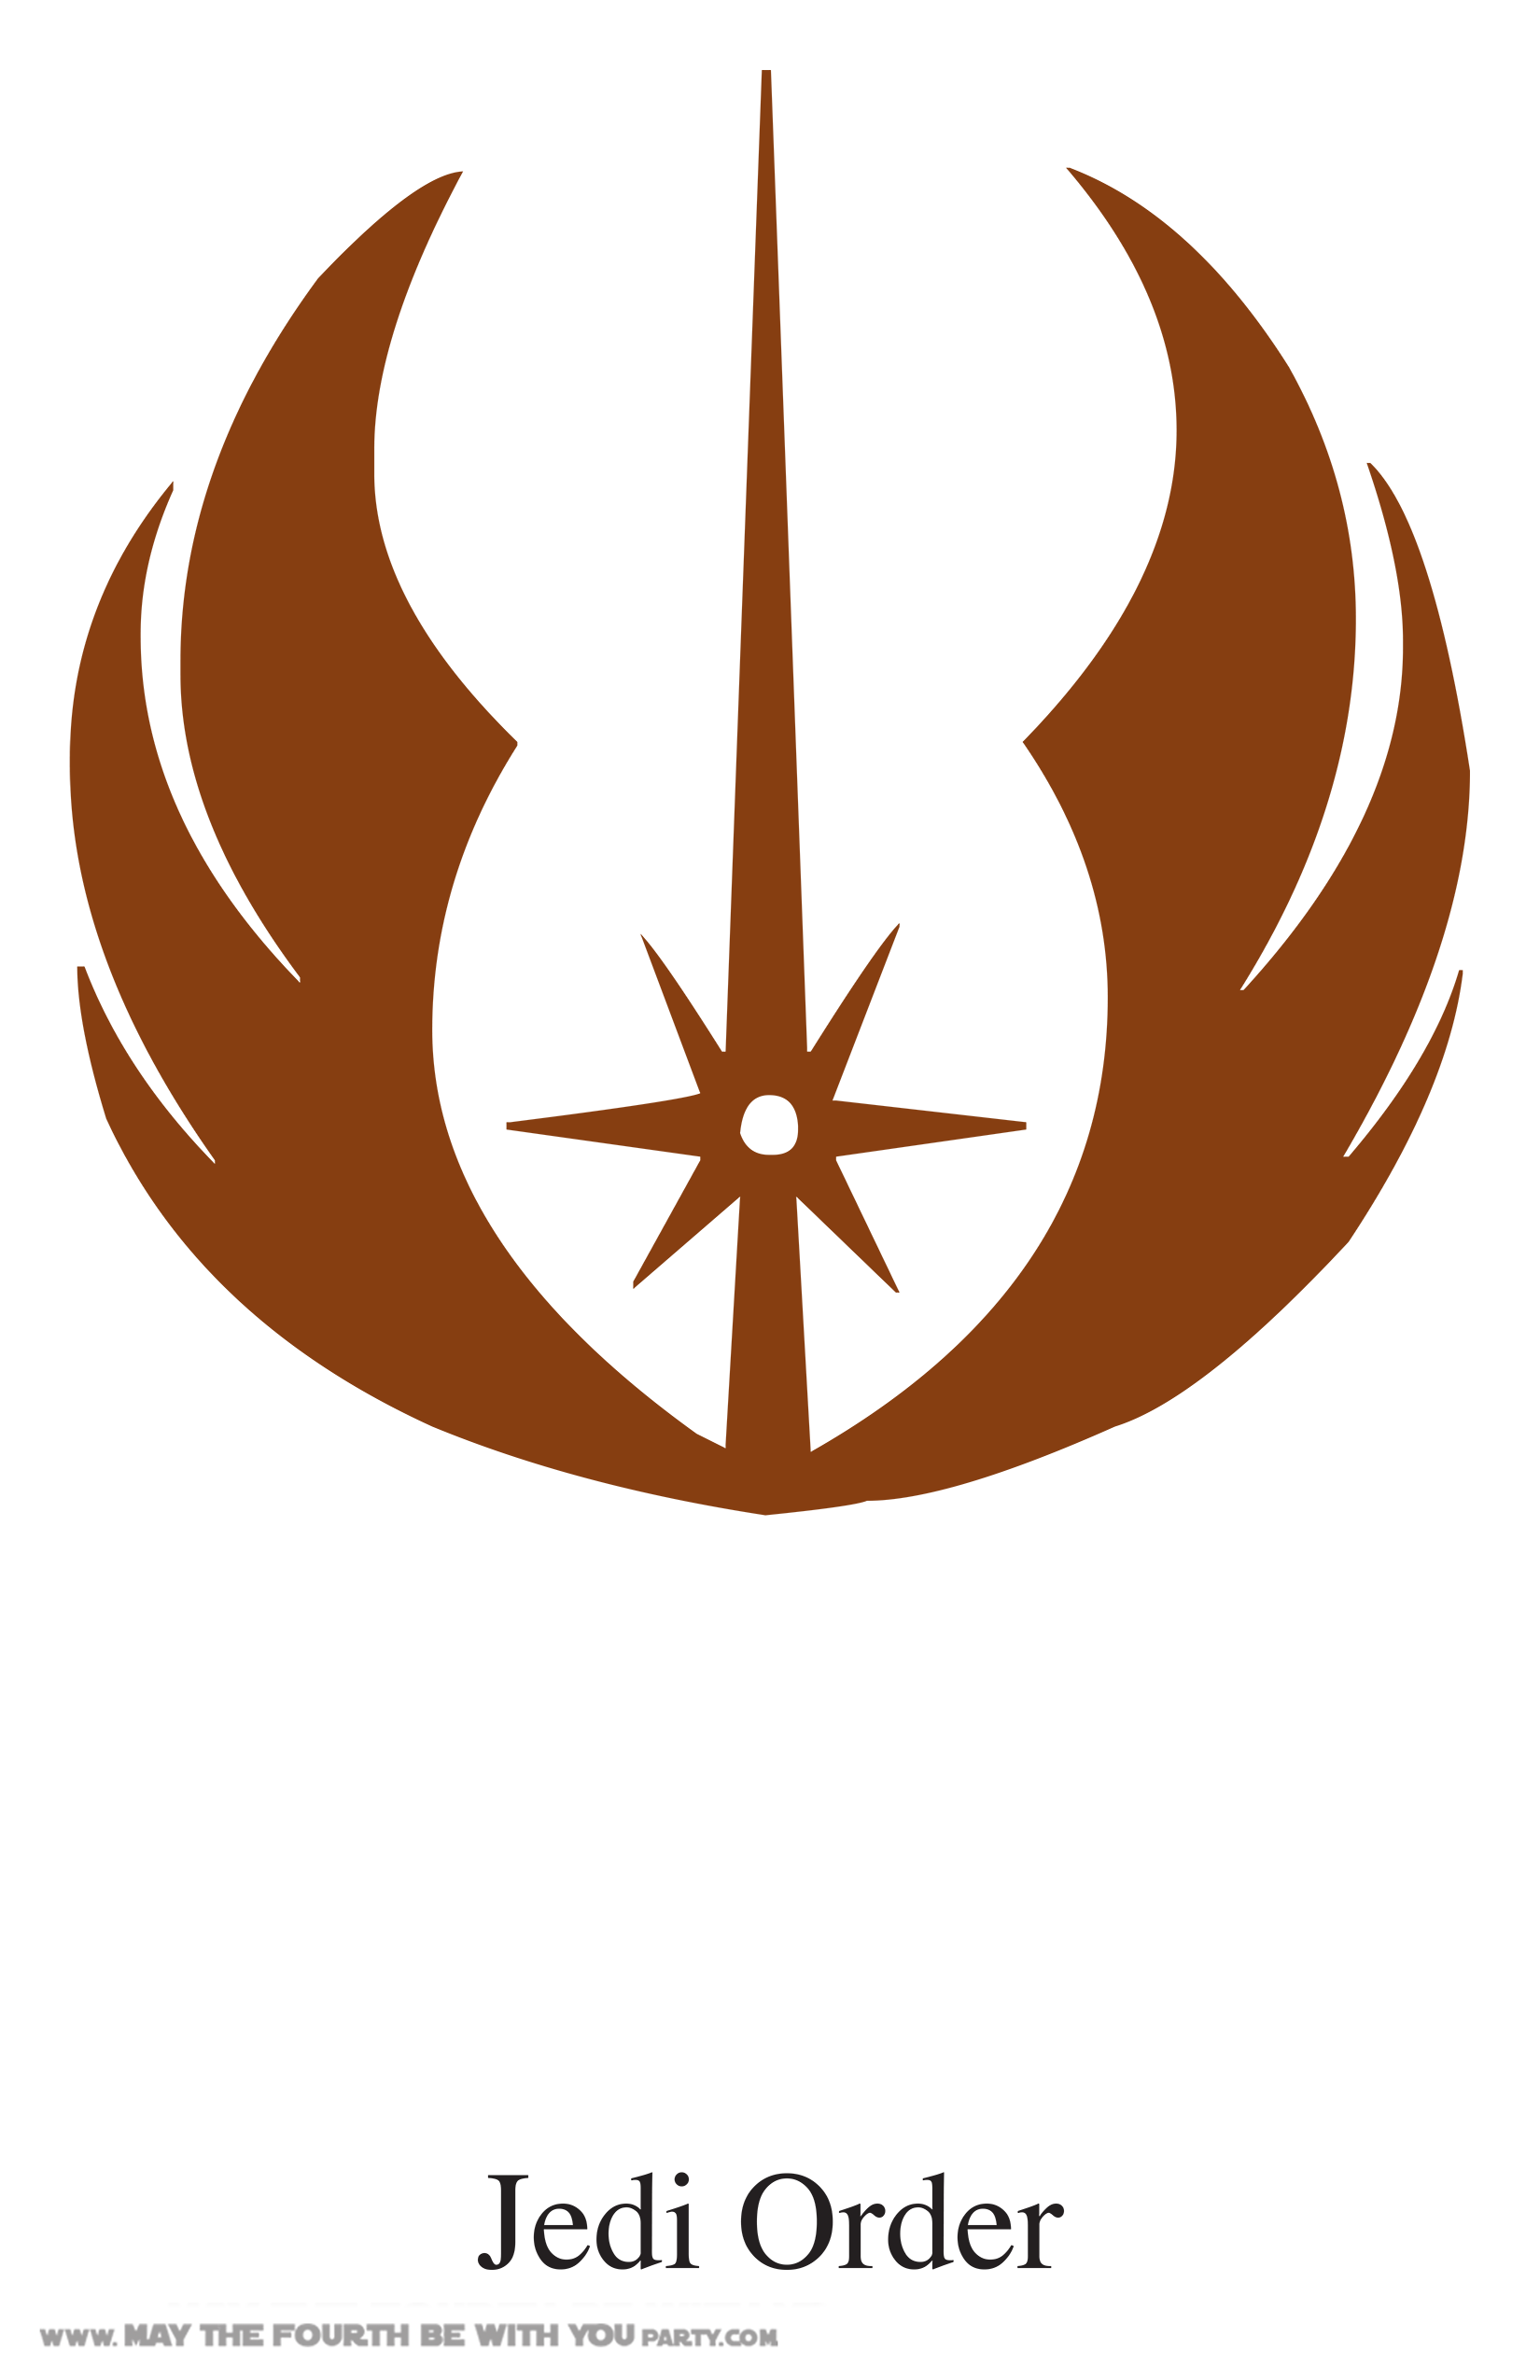 Jedi icons | Noun Project